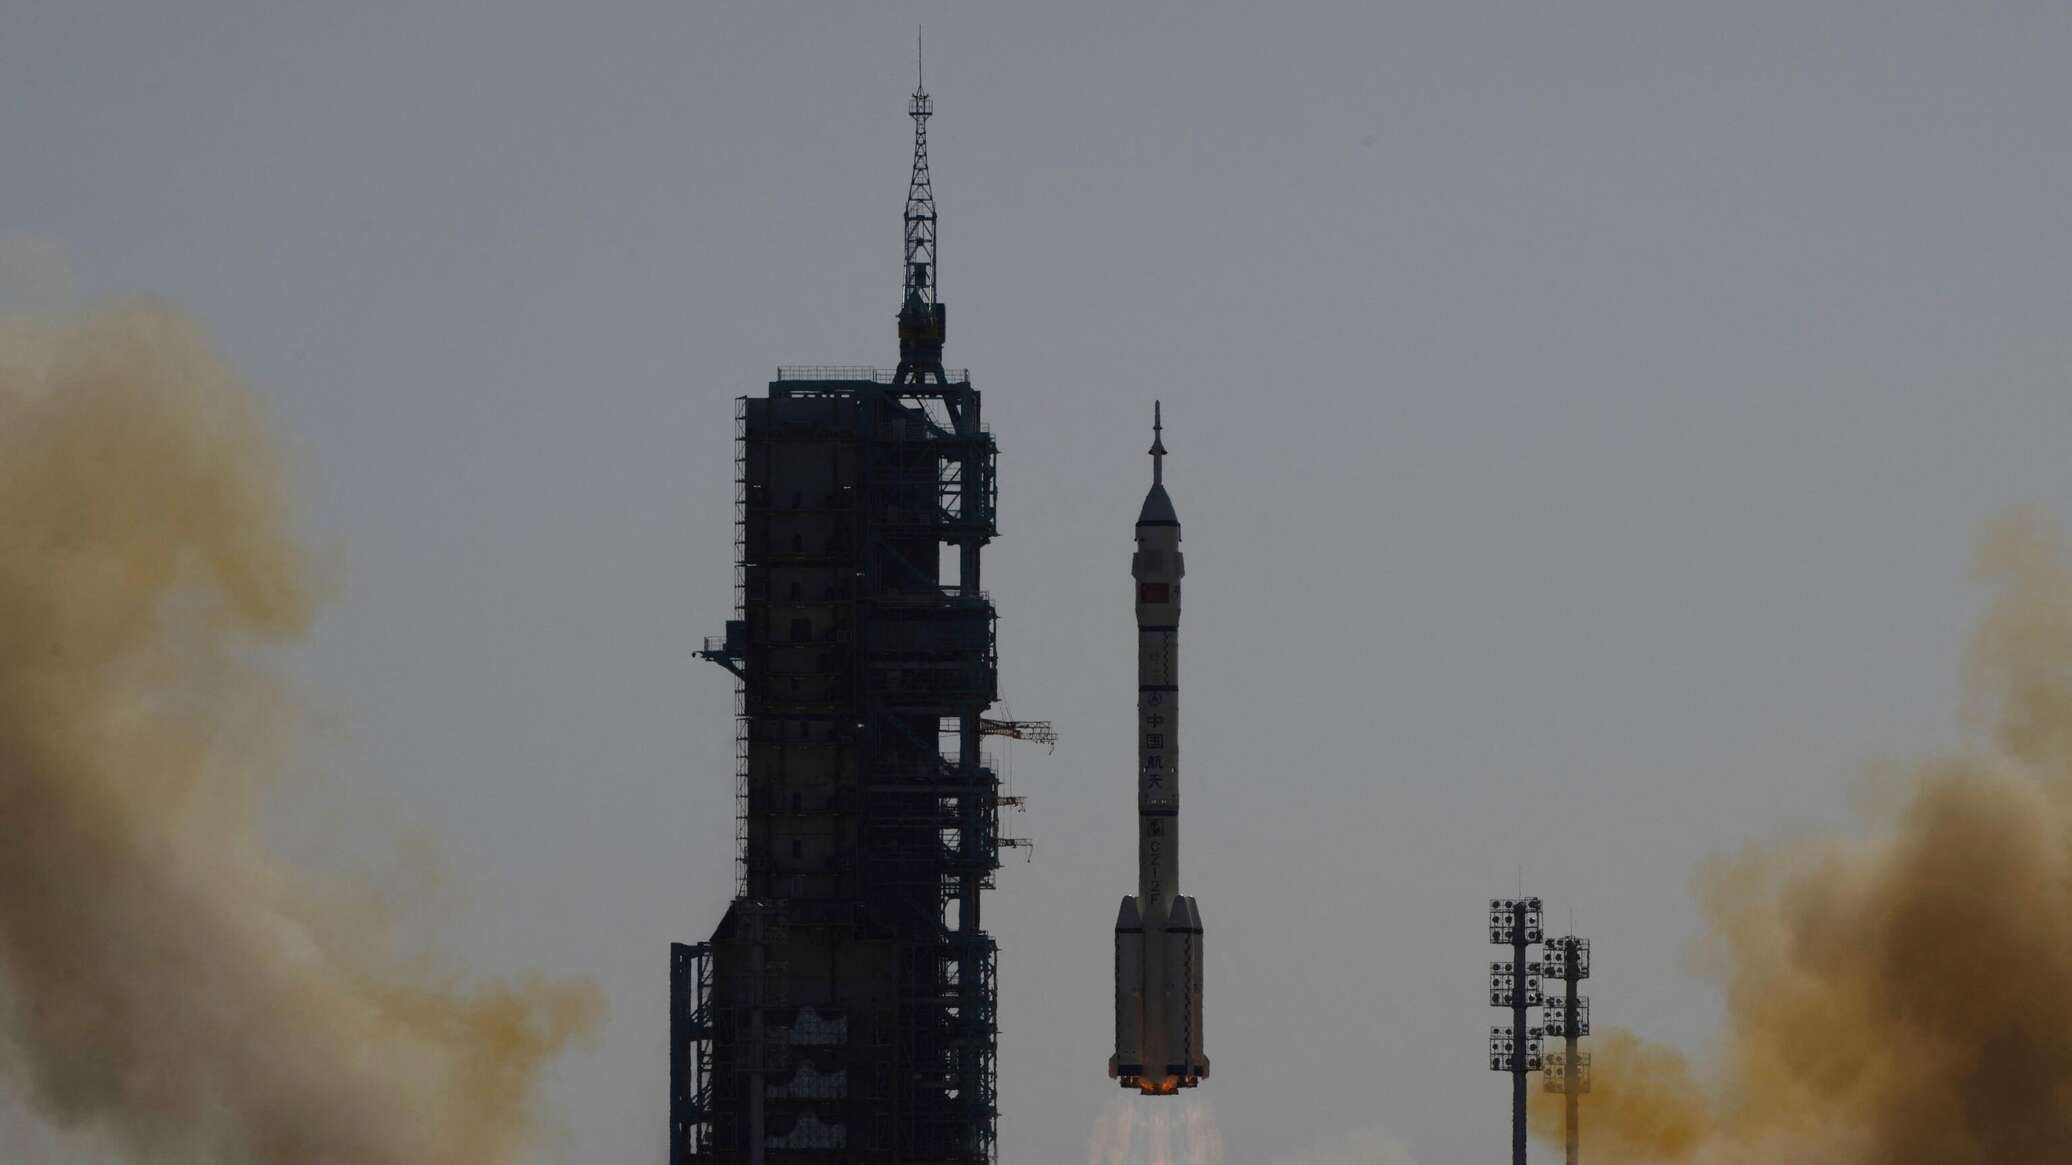 "تشانغ إيه-6" الصيني يصل إلى مداره بين الأرض والقمر في أول مهمة بتاريخ البشرية